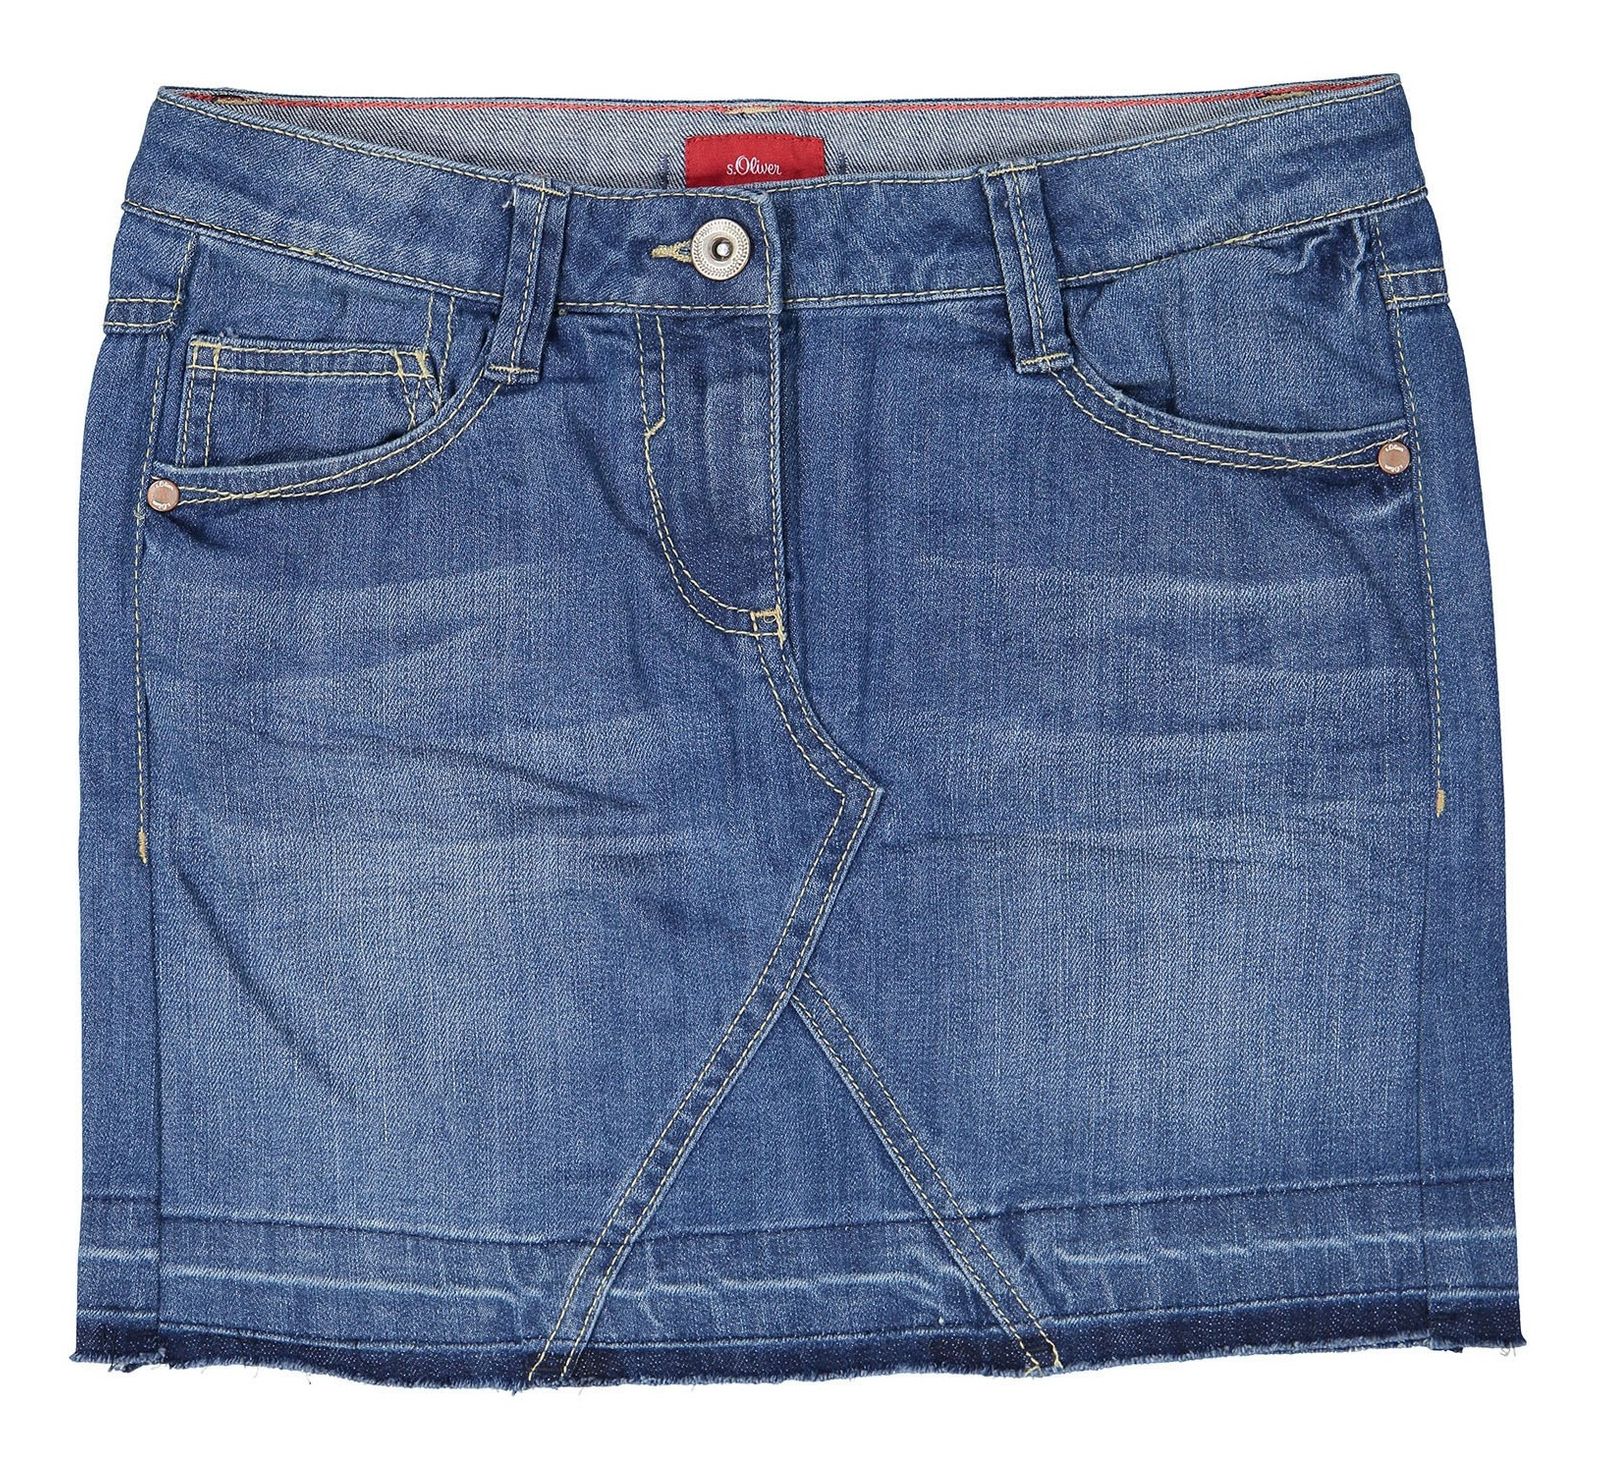 دامن جین کوتاه دخترانه - اس.اولیور - آبي  - 1